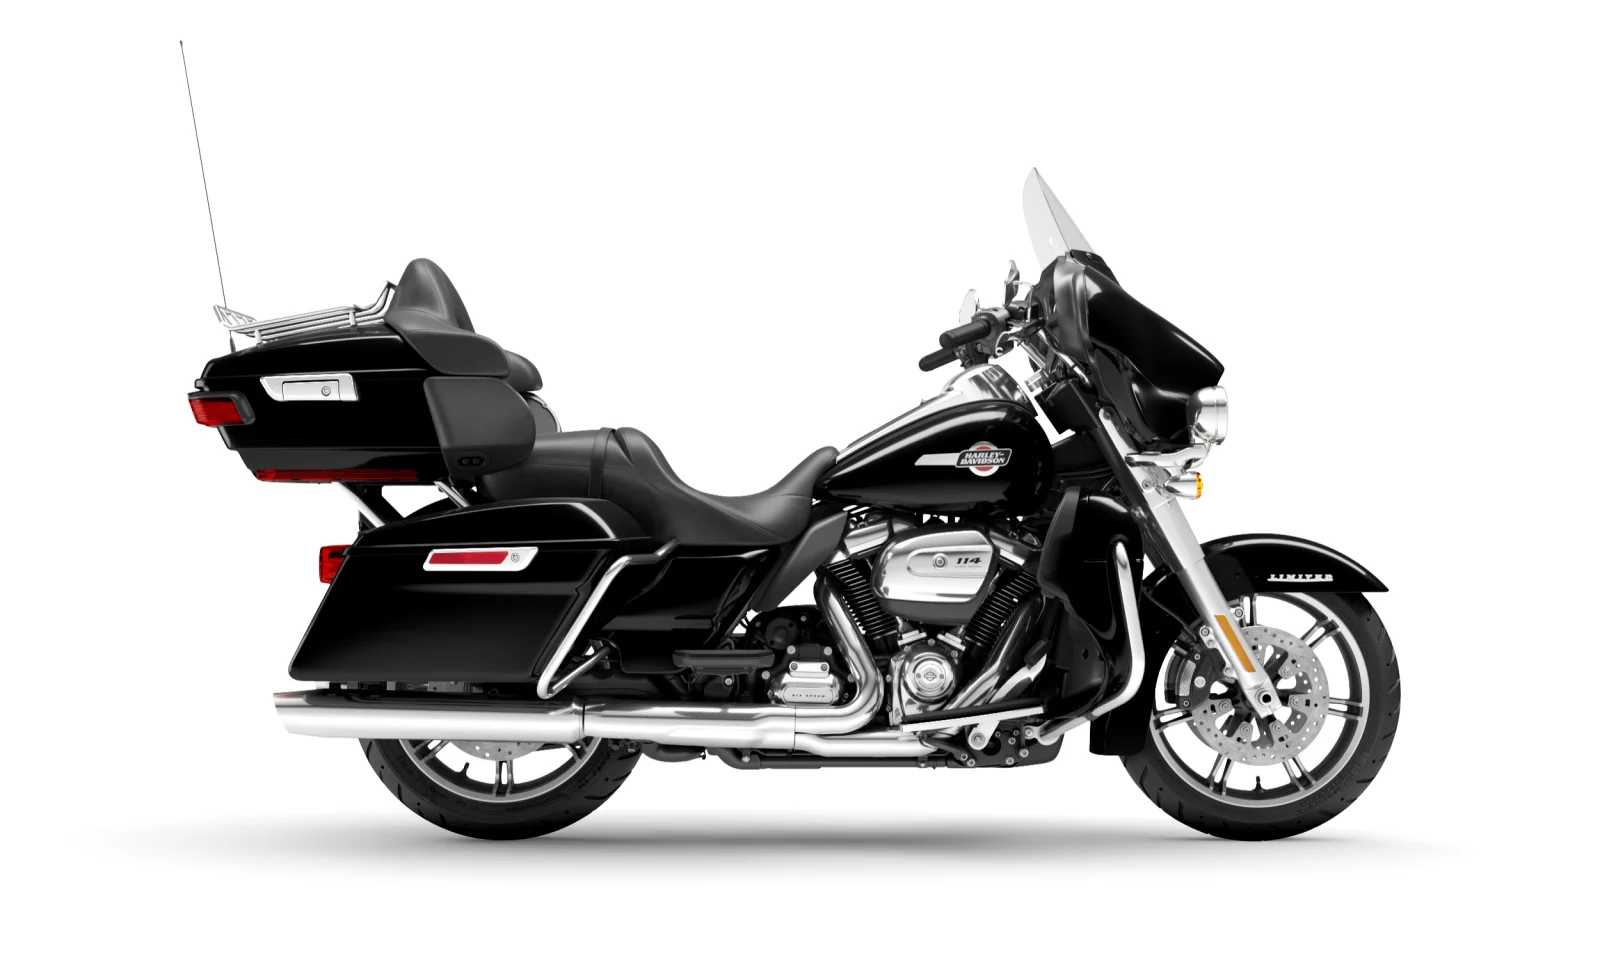 Mengenal Lebih Dekat Harley Davidson Touring Ultra Limited 2023 yang Harganya Bisa Beli Satu Unit Rumah Mewah. Temukan segala yang perlu diketahui tentang motor touring premium ini, dari spesifikasi hingga fitur keselamatan.